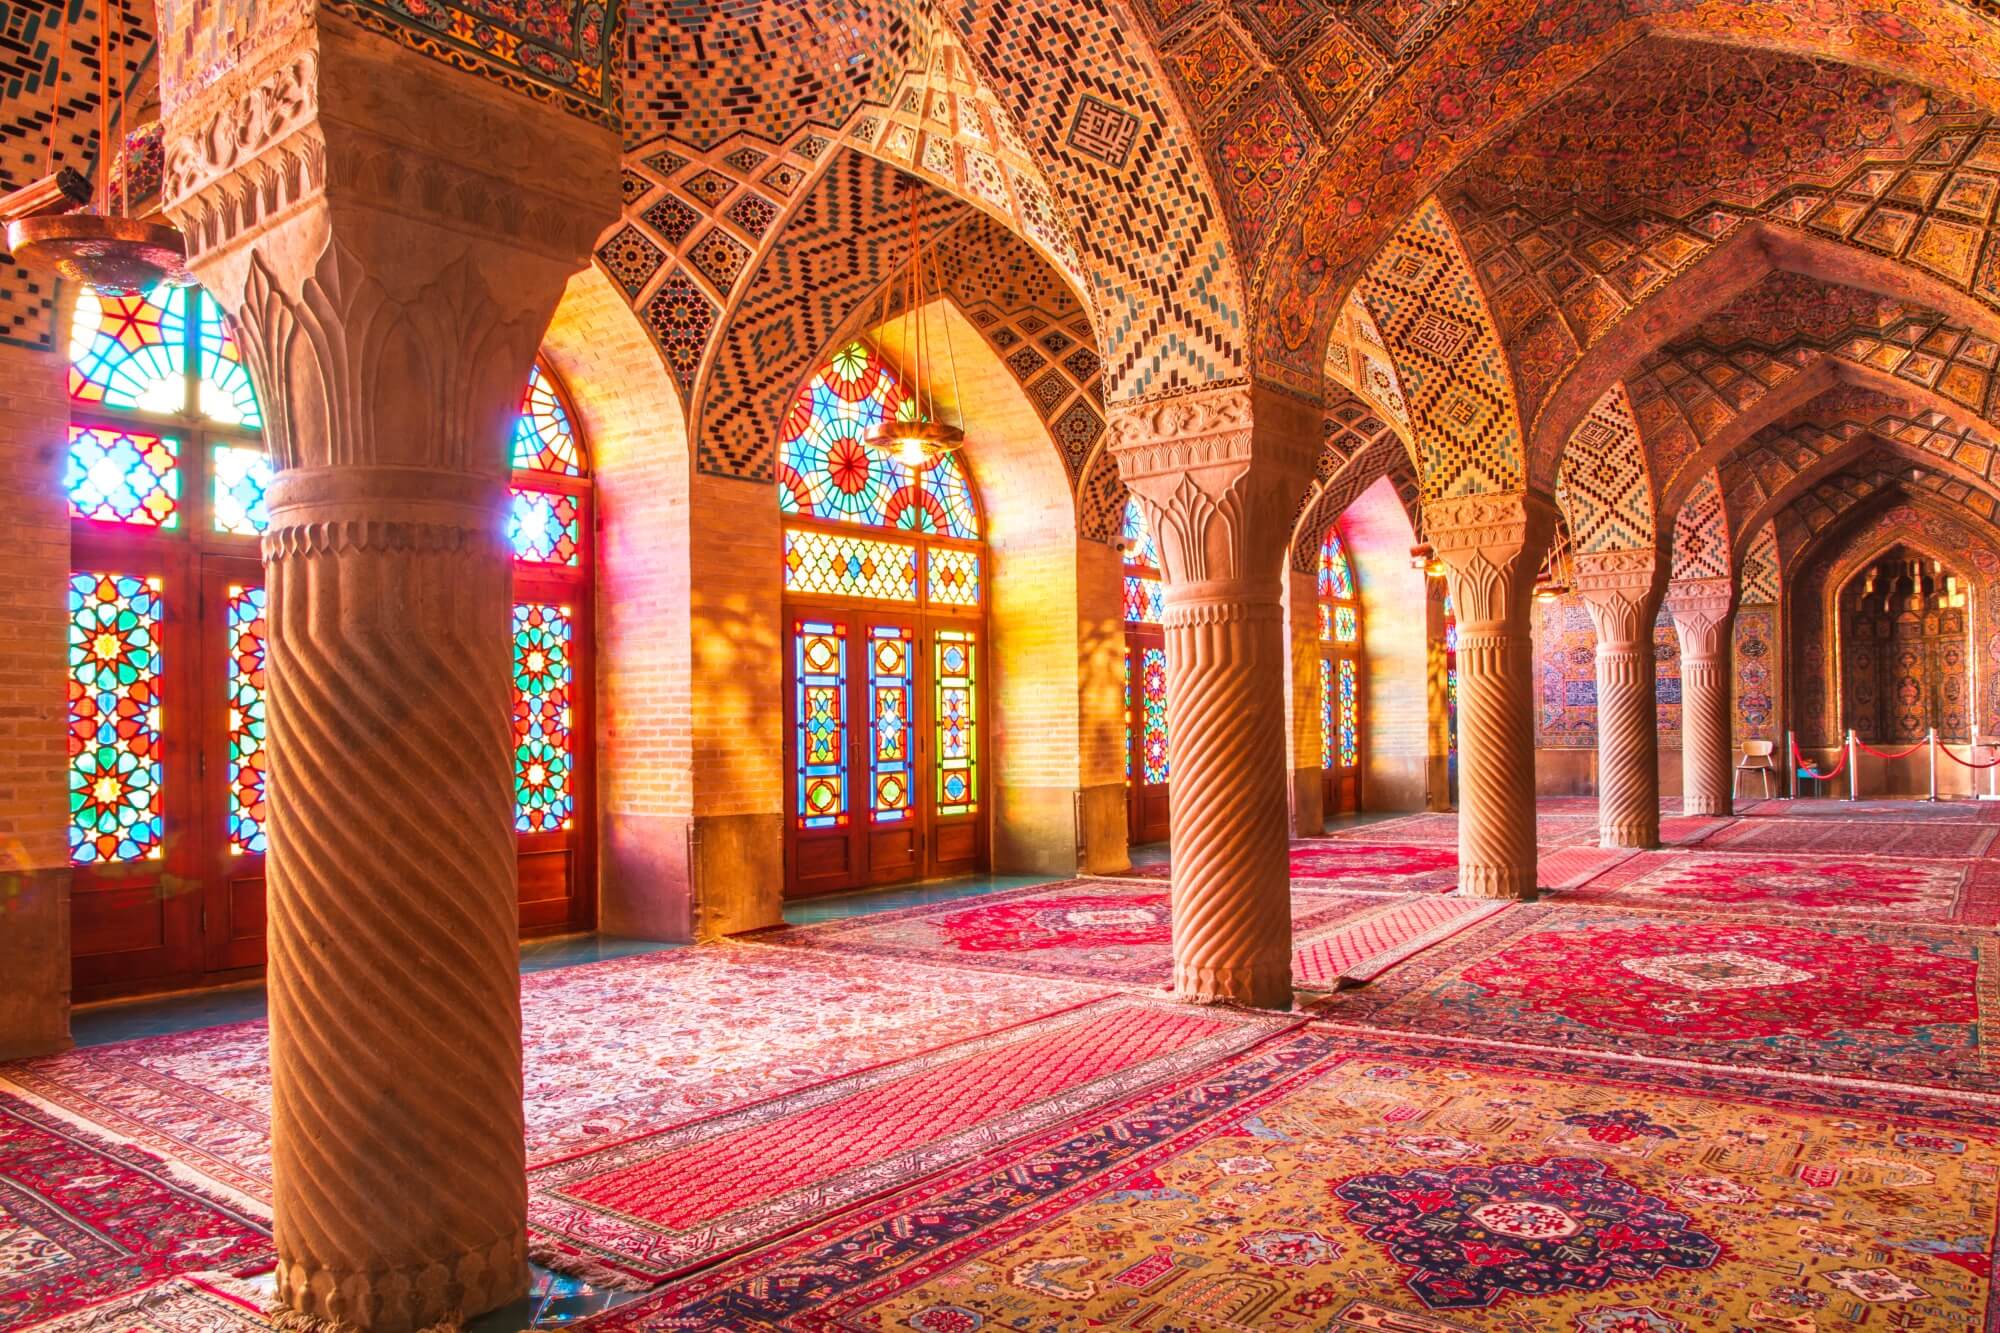 Bild aus dem Inneren eines persischen Gebäudes. Das Licht kommt durch die Fenster und erzeugt bunte Farben.